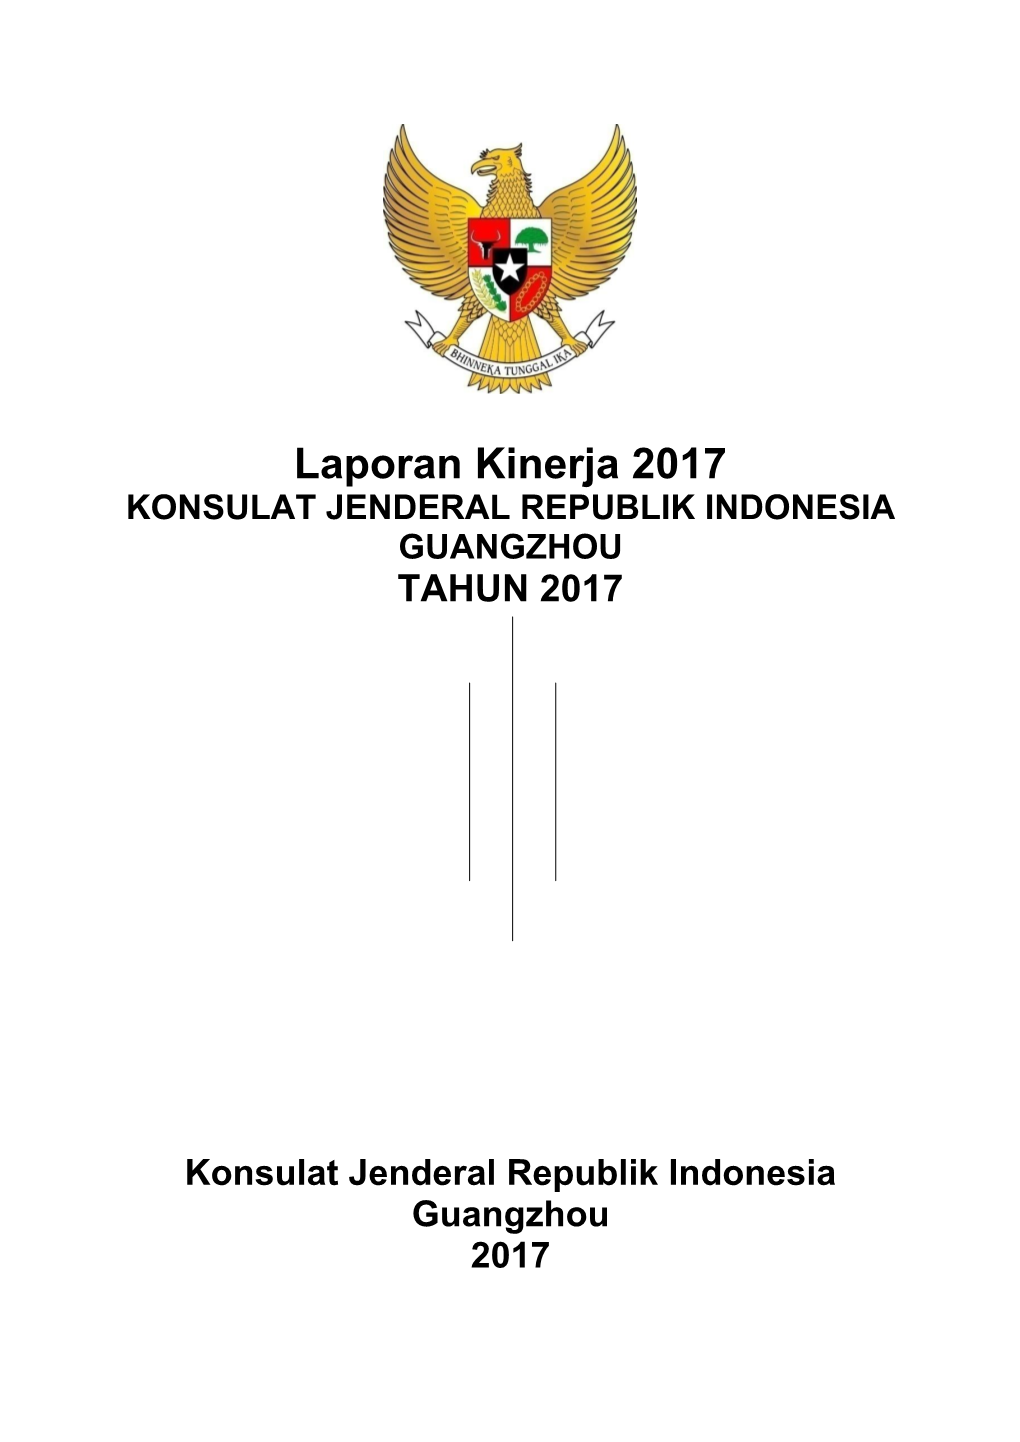 Laporan Kinerja 2017 KONSULAT JENDERAL REPUBLIK INDONESIA GUANGZHOU TAHUN 2017